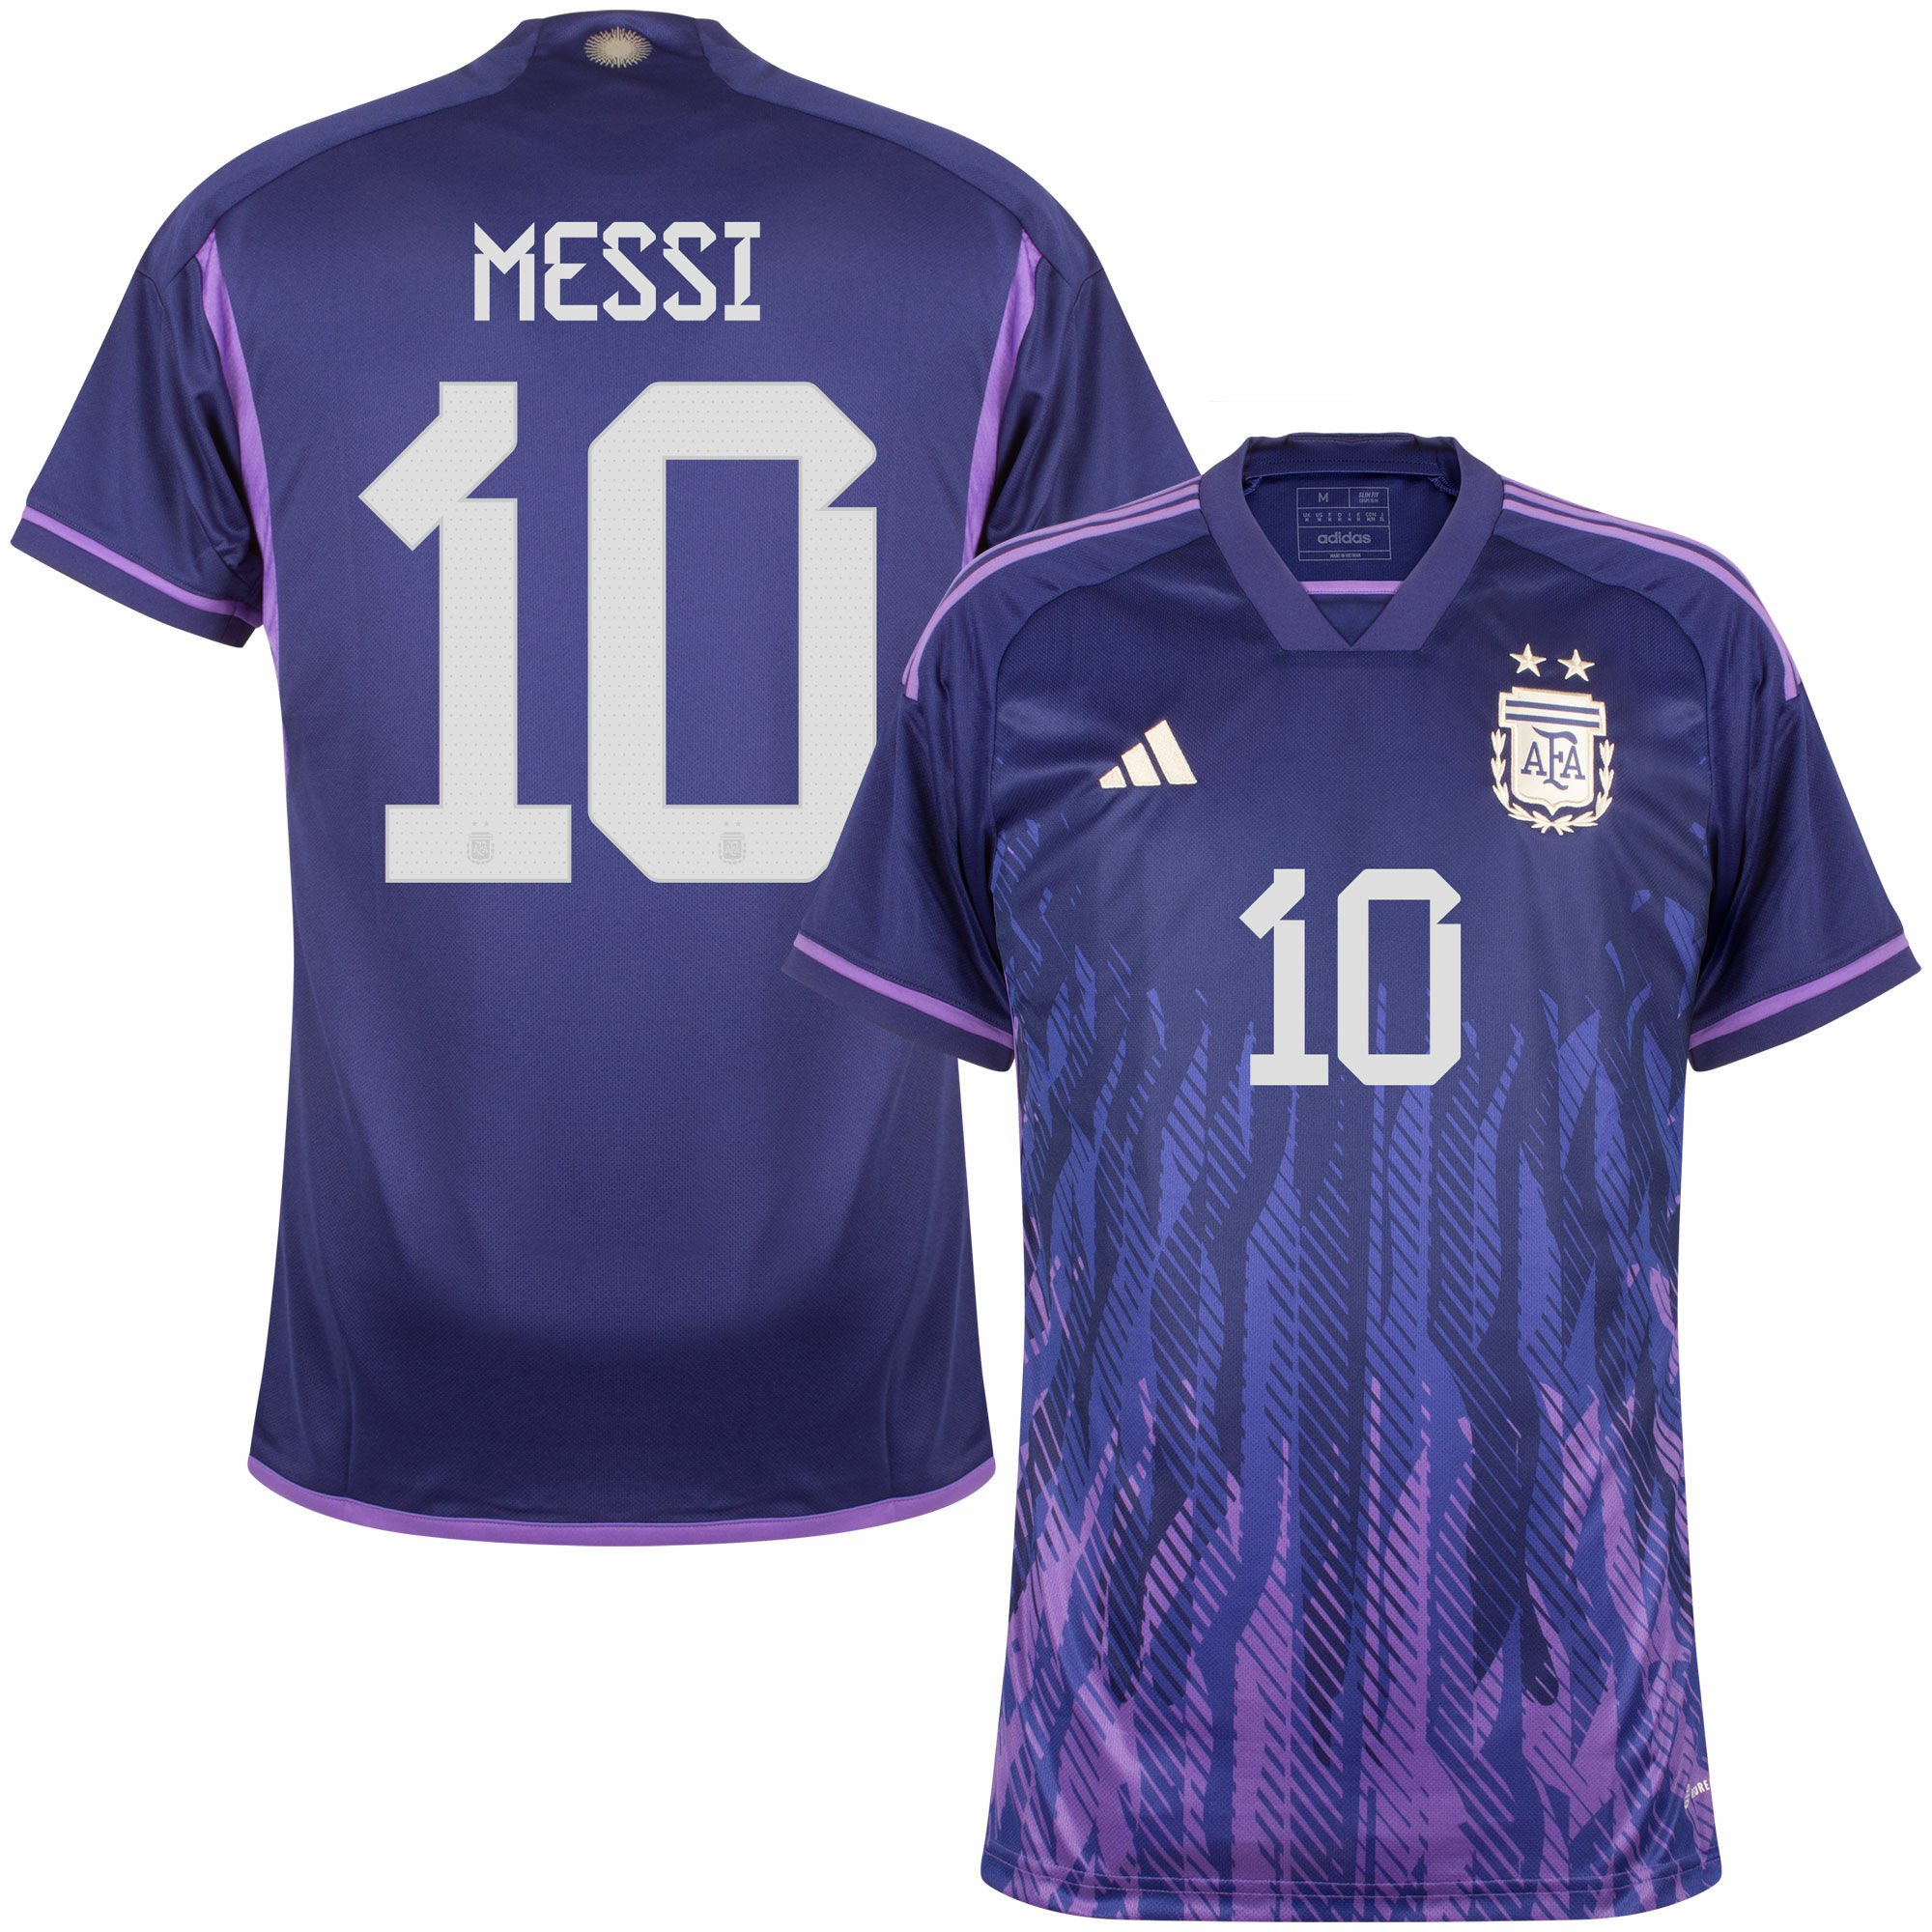 Argentina - Dres fotbalový - oficiální potisk, autentický, číslo 10, fialový, sezóna 2022/23, Lionel Messi, venkovní